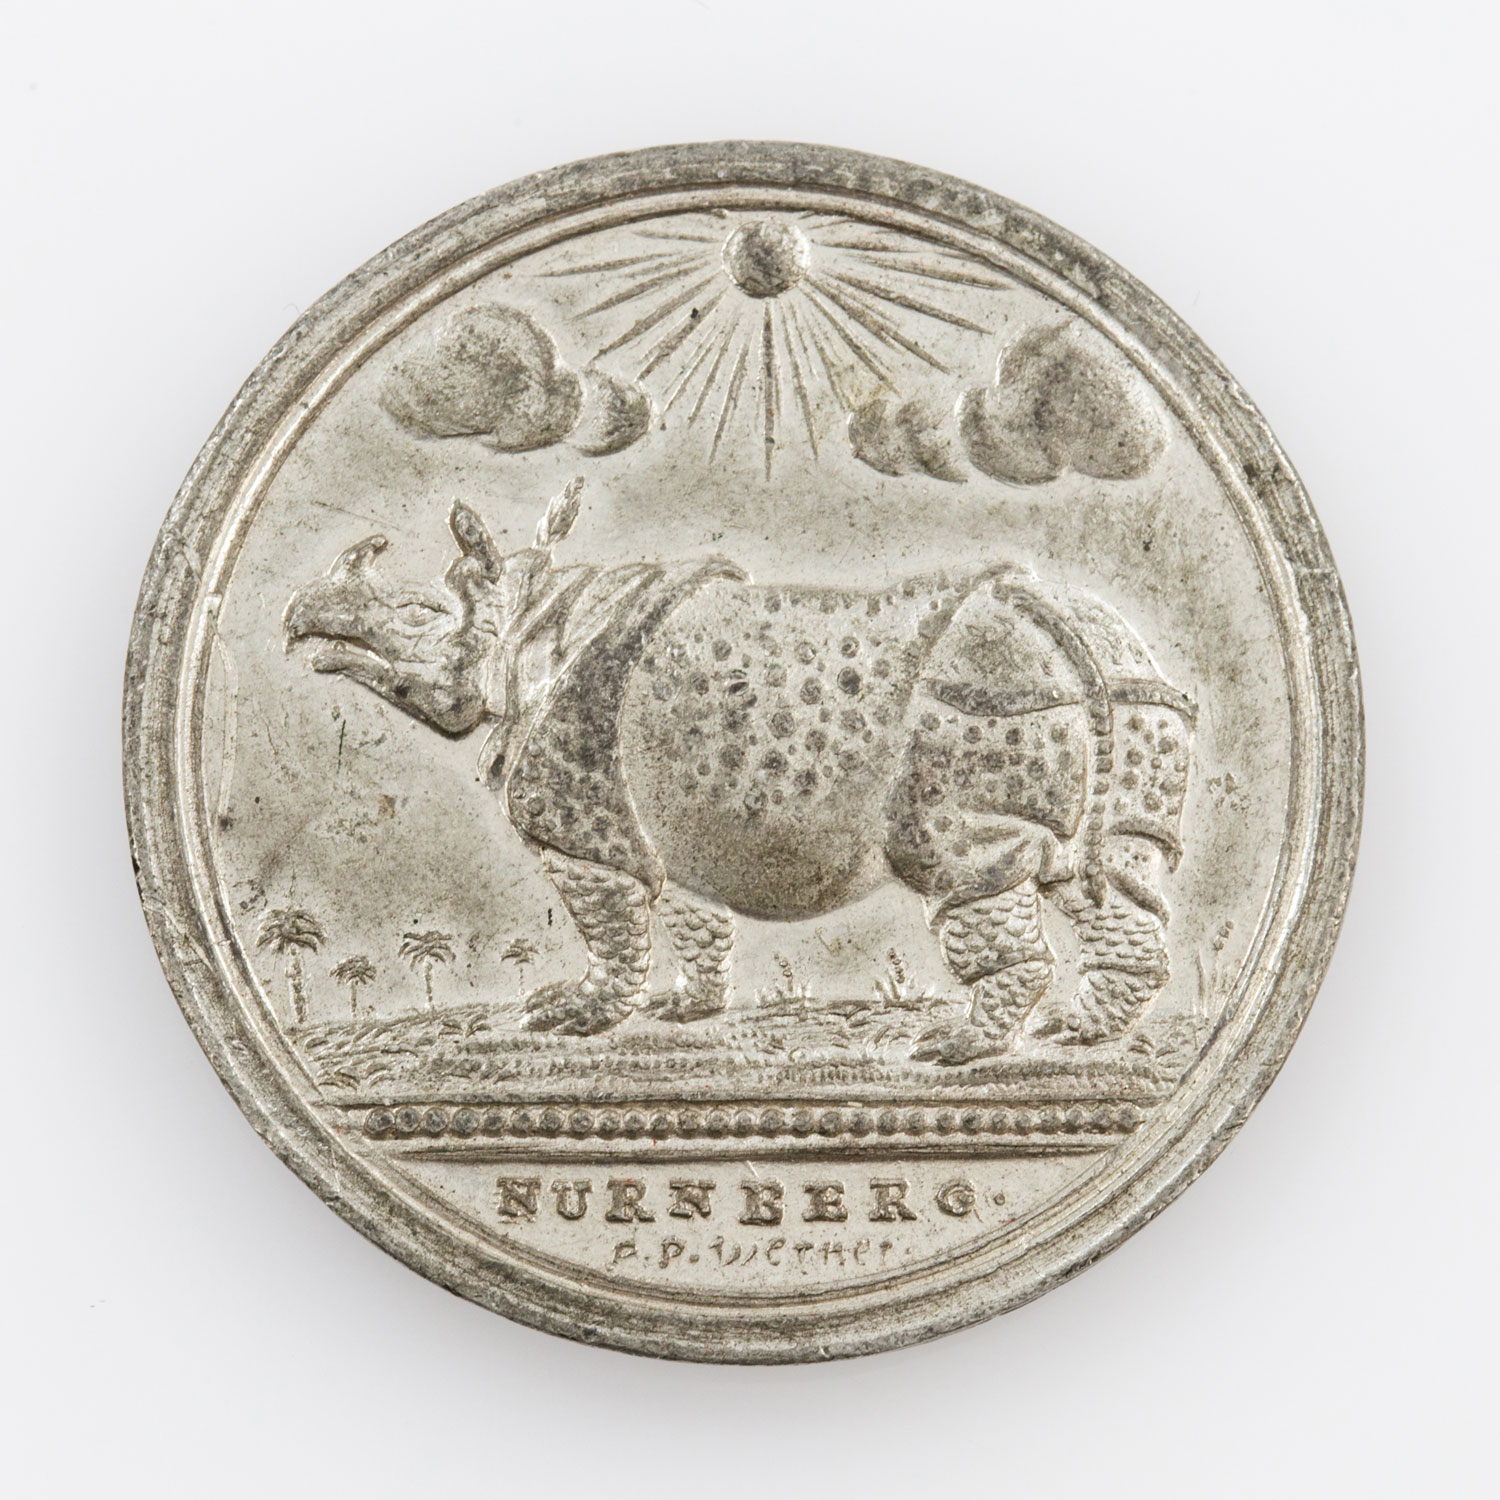 Nürnberg - Zinn-Medaille v. P. P. Werner, auf das seit dem 12. Juli 1748 öffentlich gezeigte